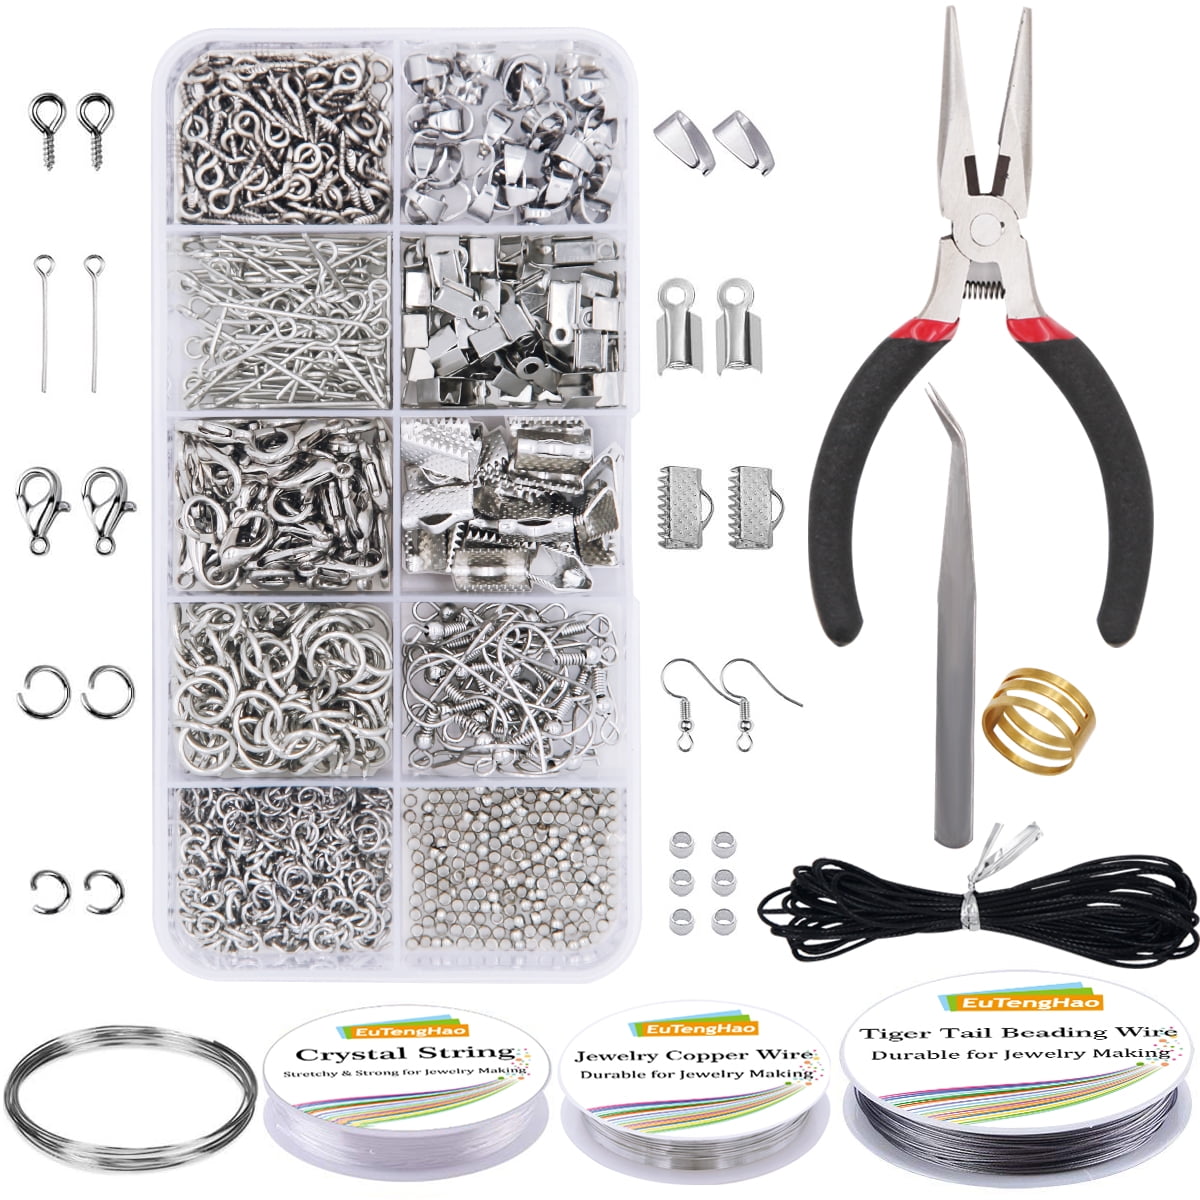 Necklace Repair Kit